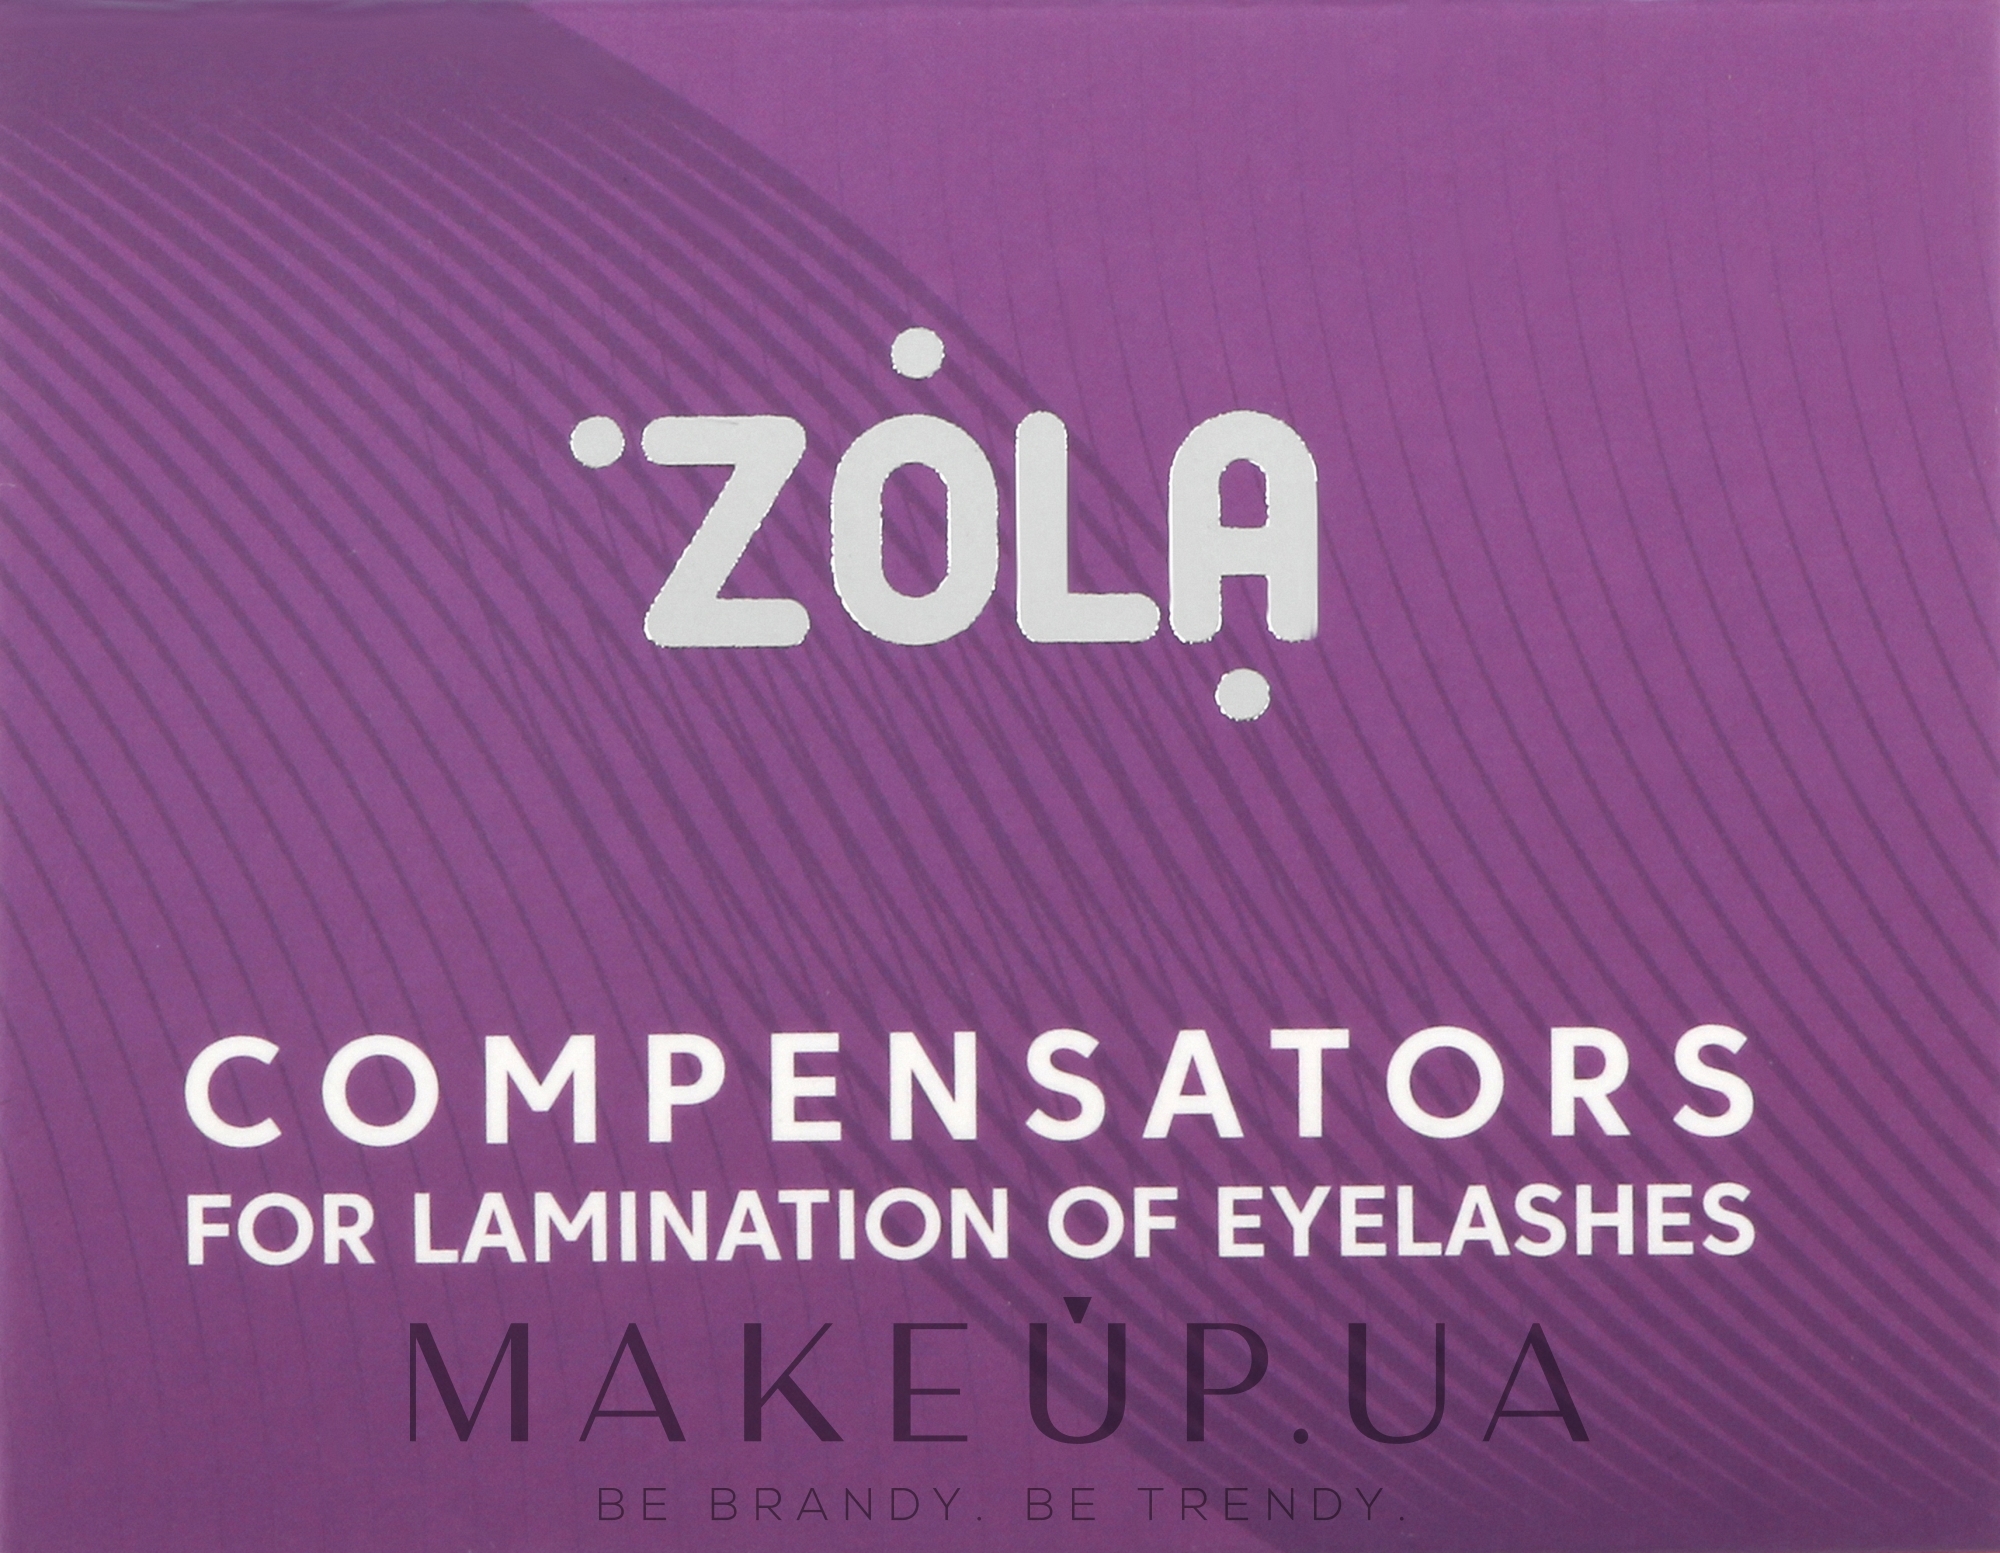 Компенсаторы для ламинирования ресниц, фиолетовые - Zola Compensators For Lamination Of Eyelashes — фото 2шт